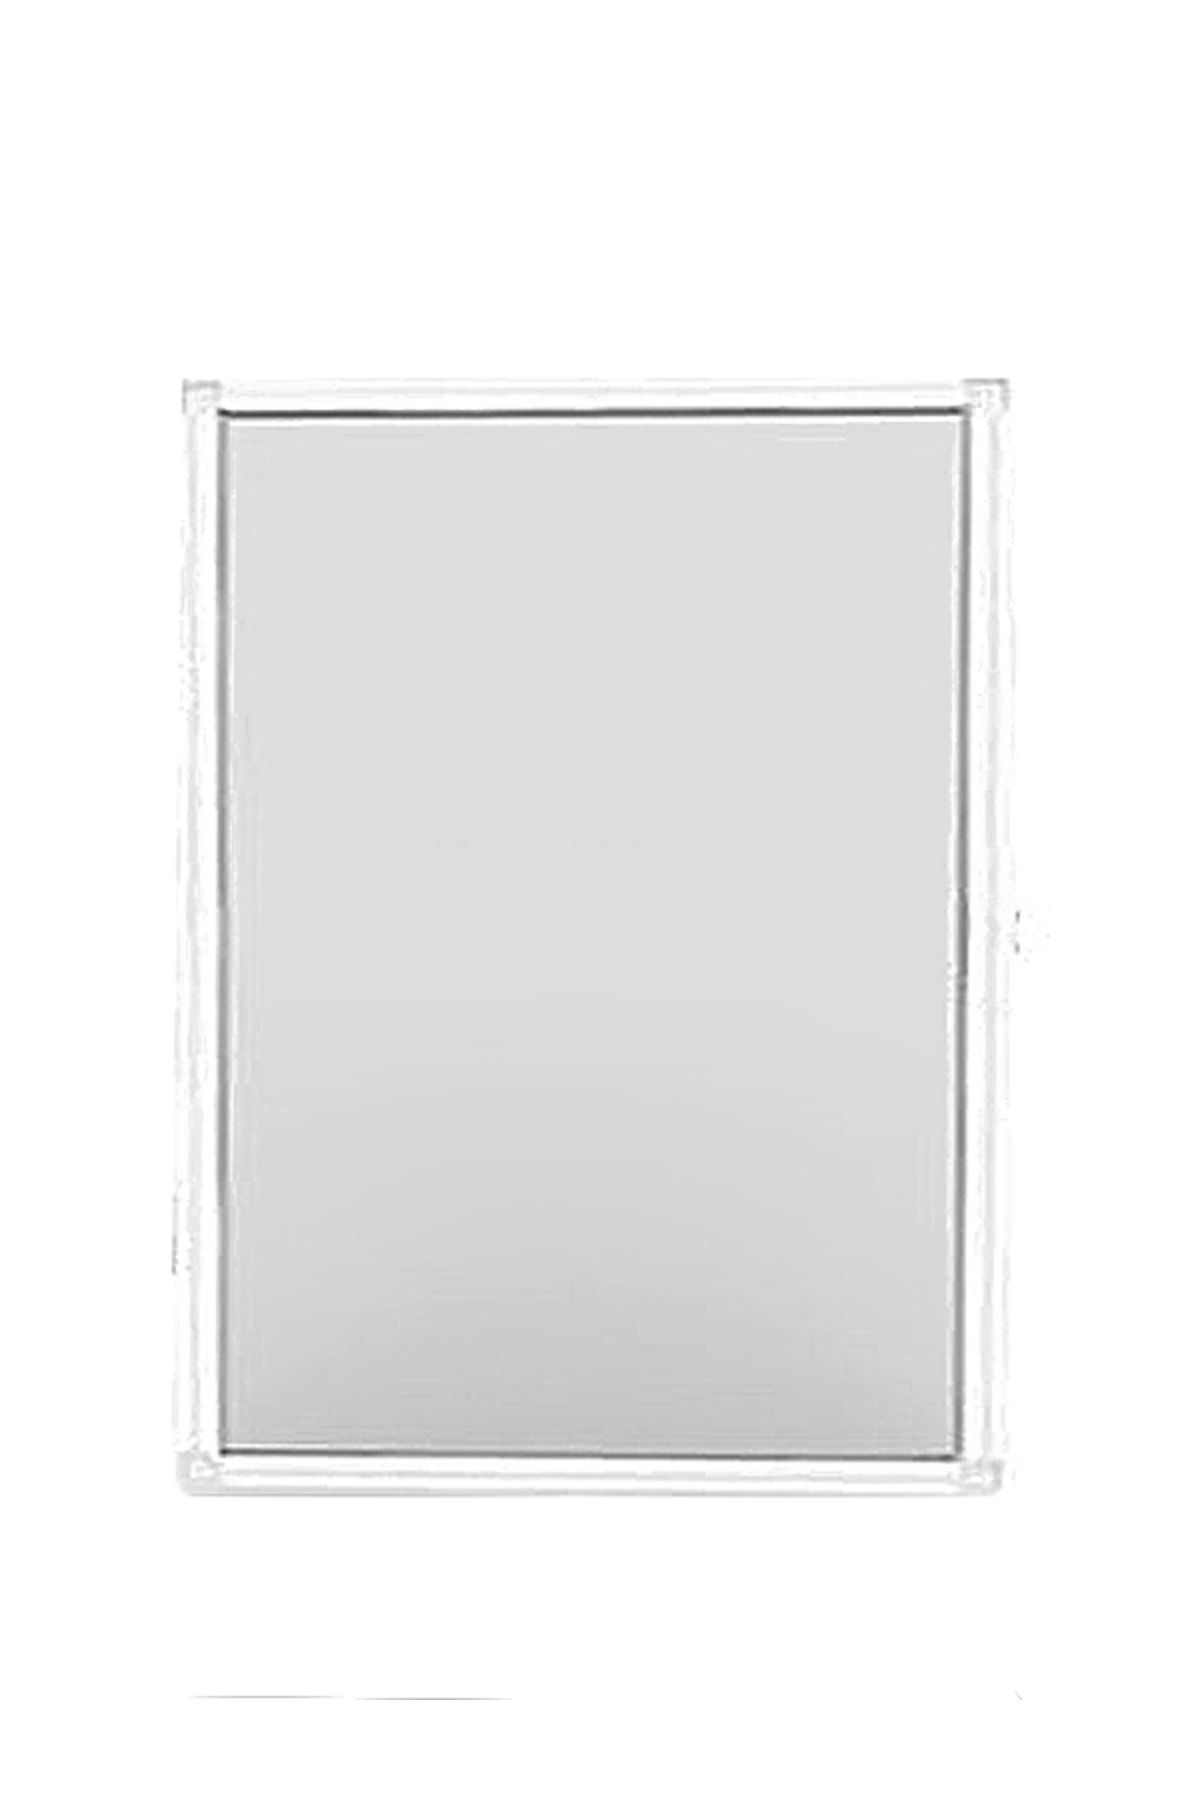 Kamataş Sabit Sök Tak Pencere Sinekliği Beyaz (En: 0-70 cm. Boy: 0-130 cm)